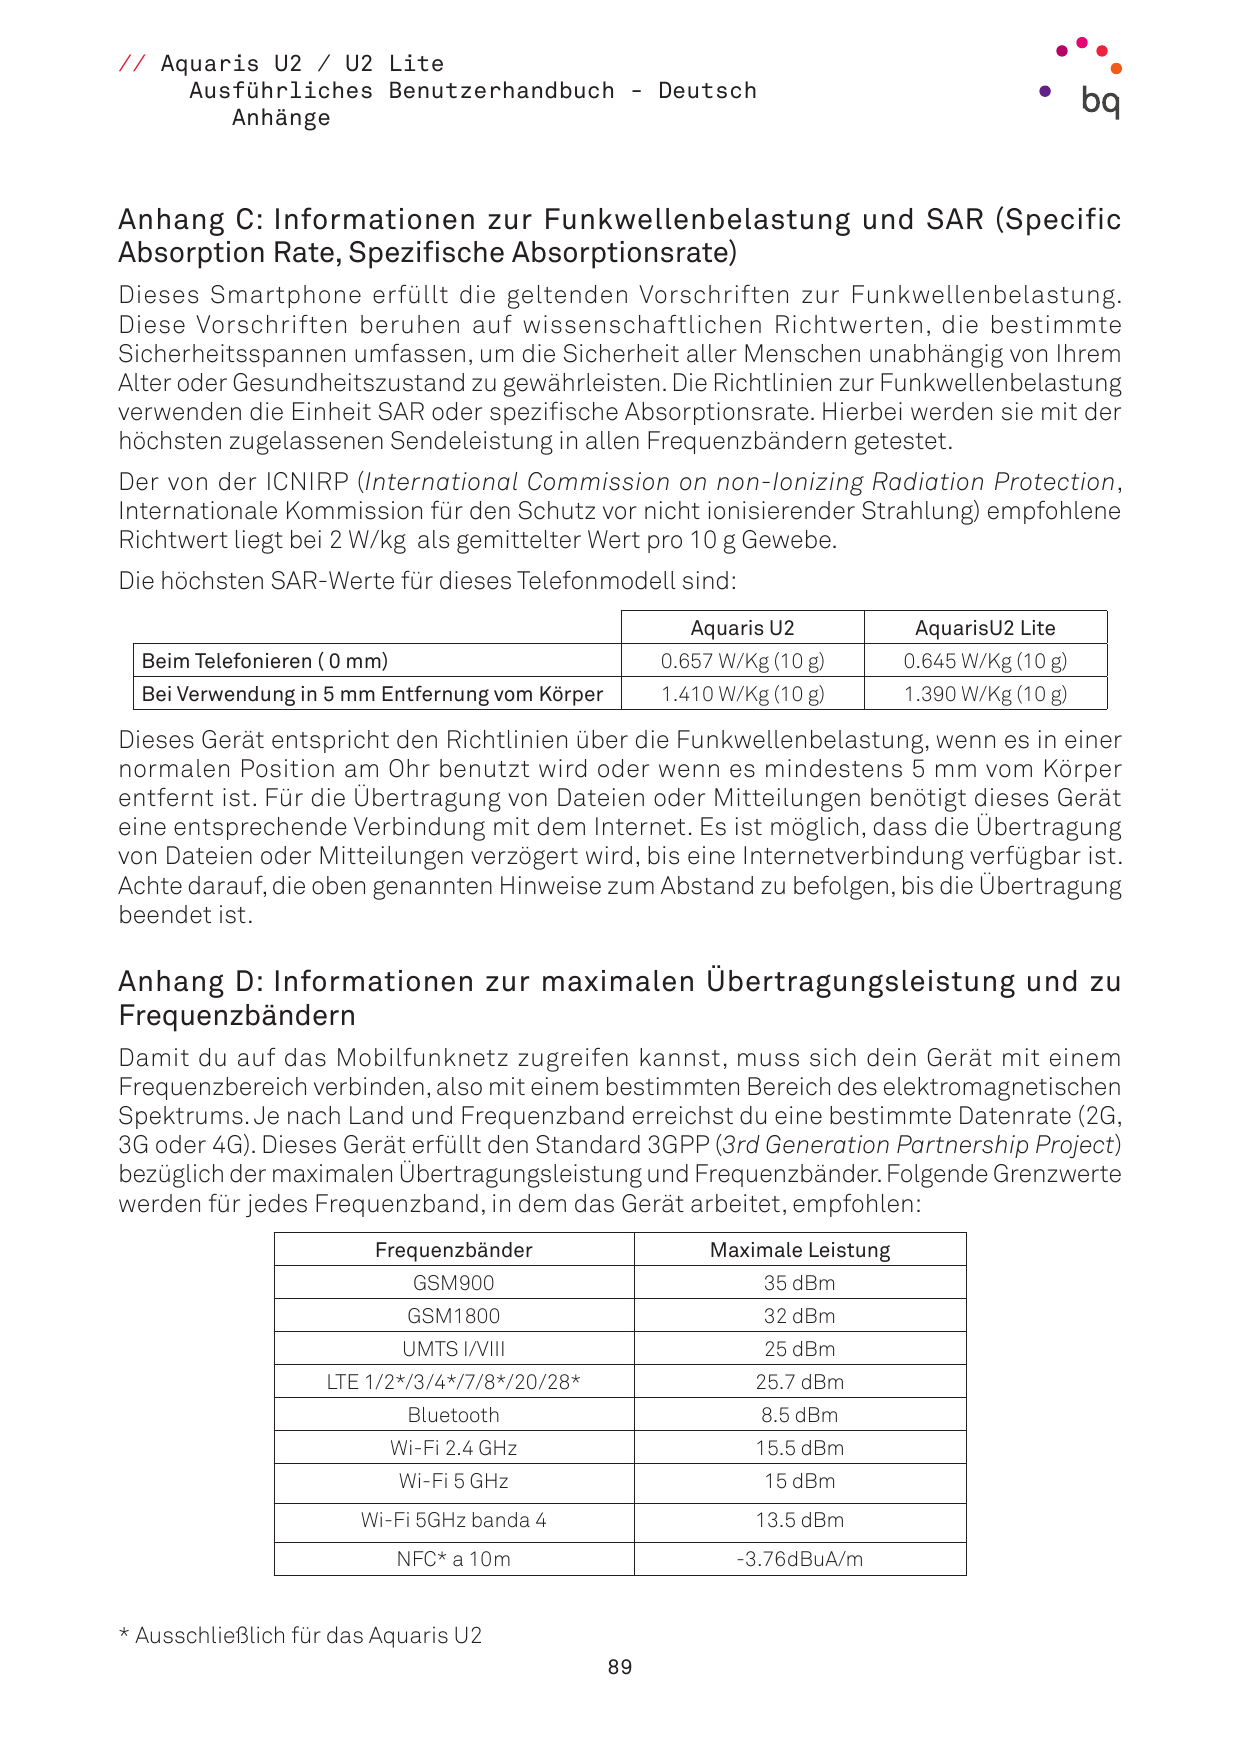 // Aquaris U2 / U2 LiteAusführliches Benutzerhandbuch - DeutschAnhängeAnhang C: Informationen zur Funkwellenbelastung und SAR (S